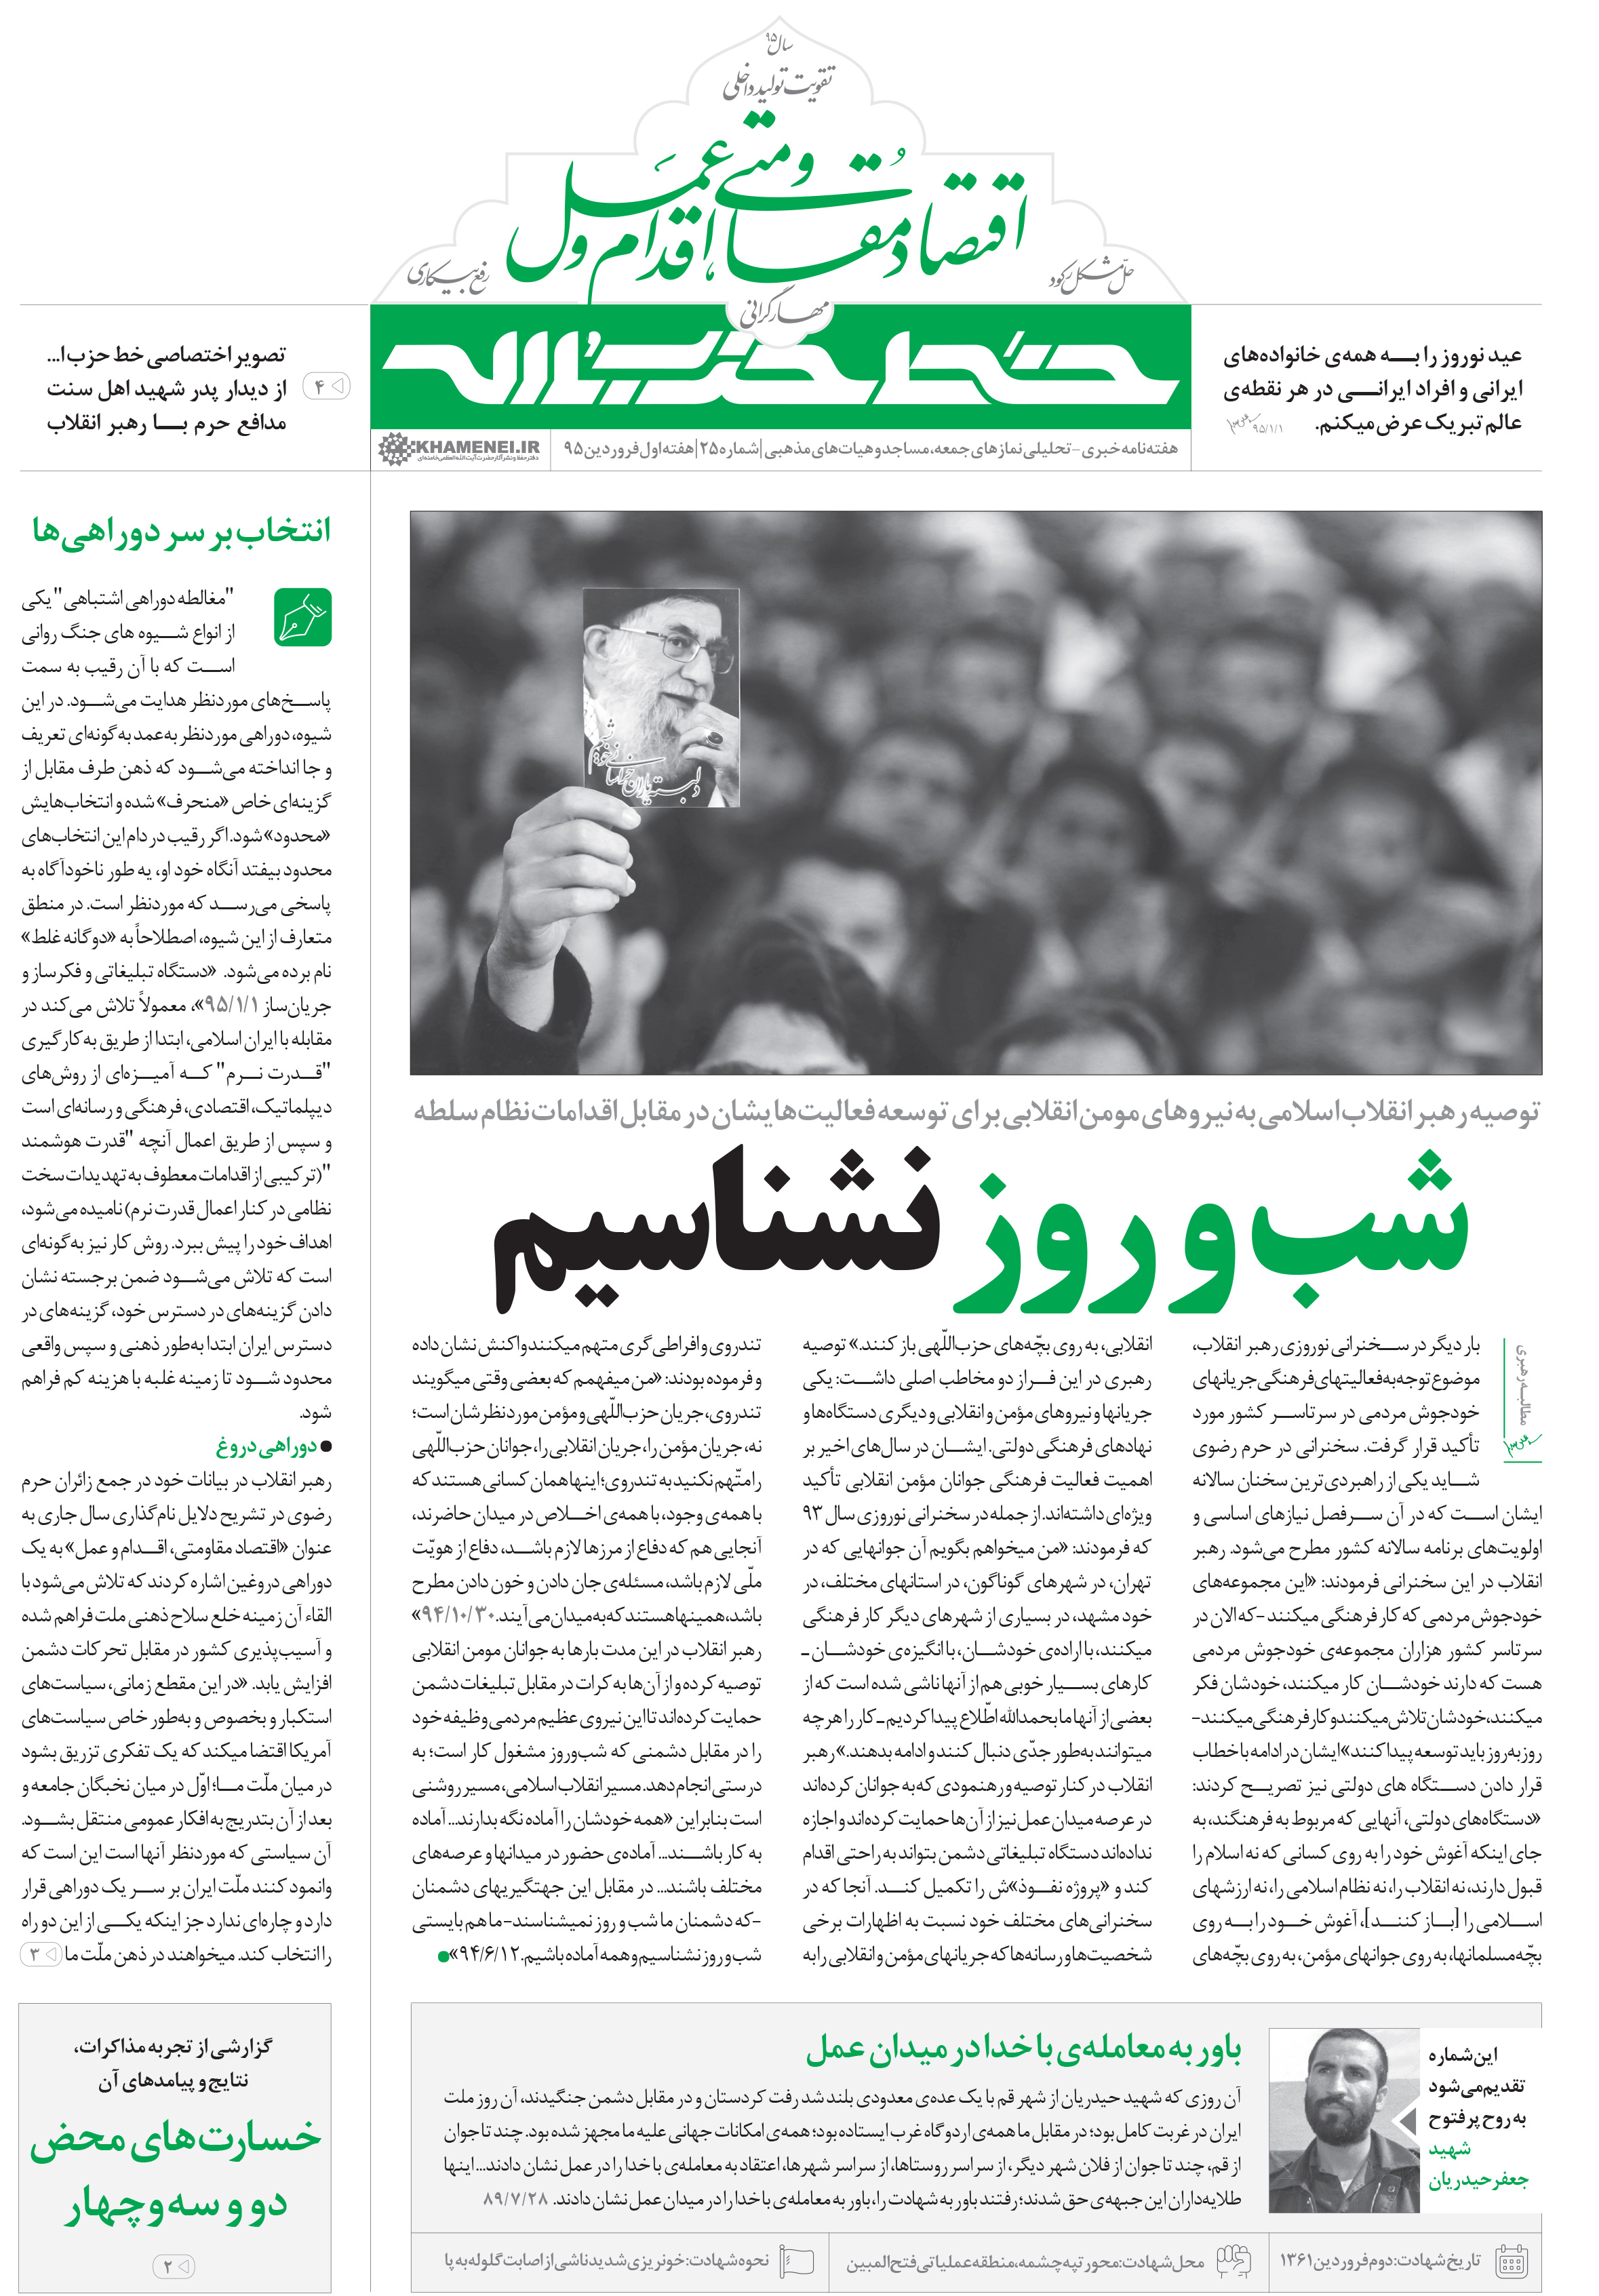 اولین شماره نشریه خط حزب الله در سال 95 منتشر شد